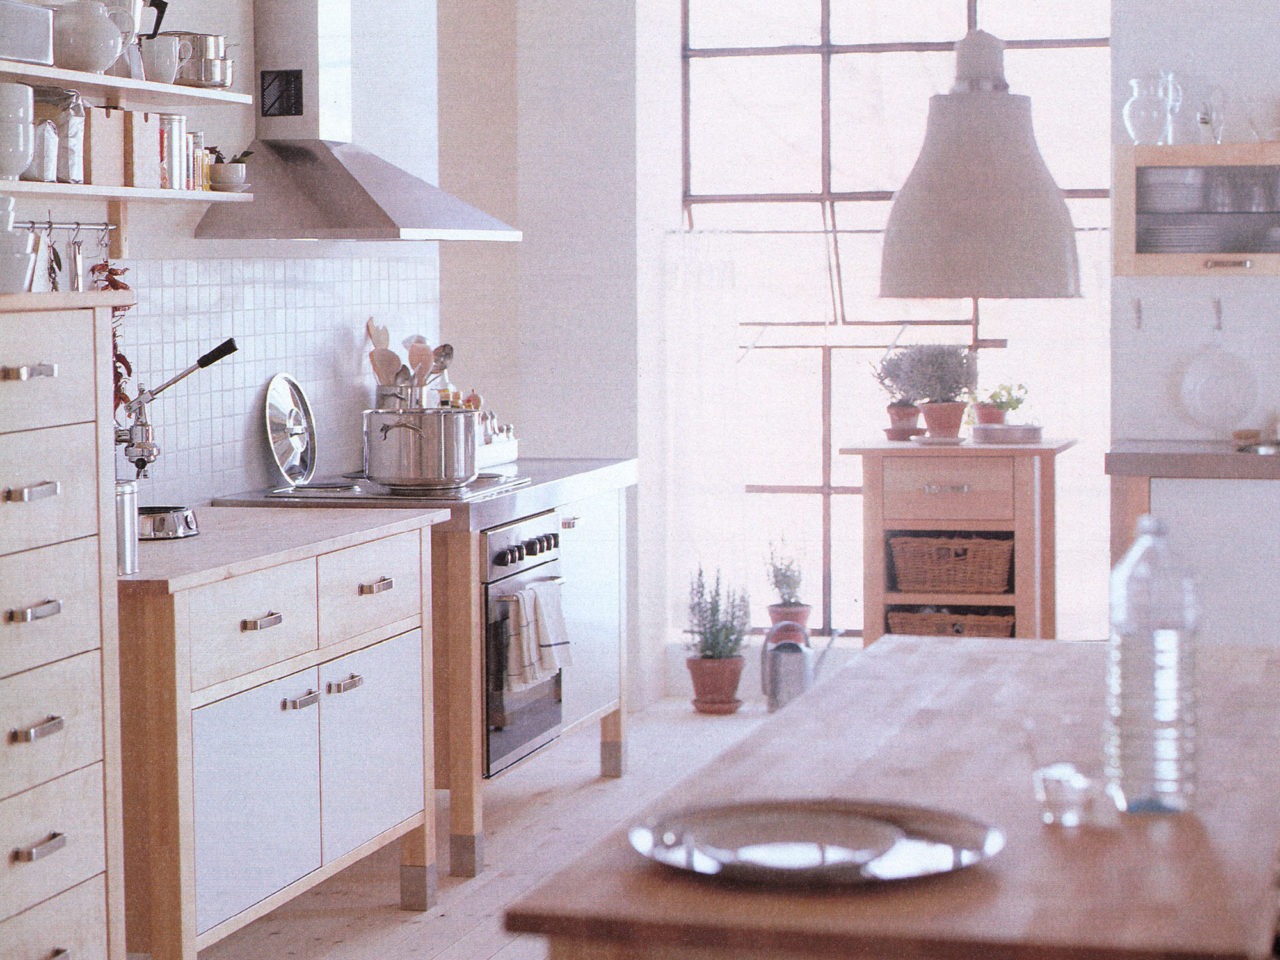 Cuisine en bois clair avec cuisinière, placards et îlot en modules indépendants. Mur carrelé blanc, détails chromés.